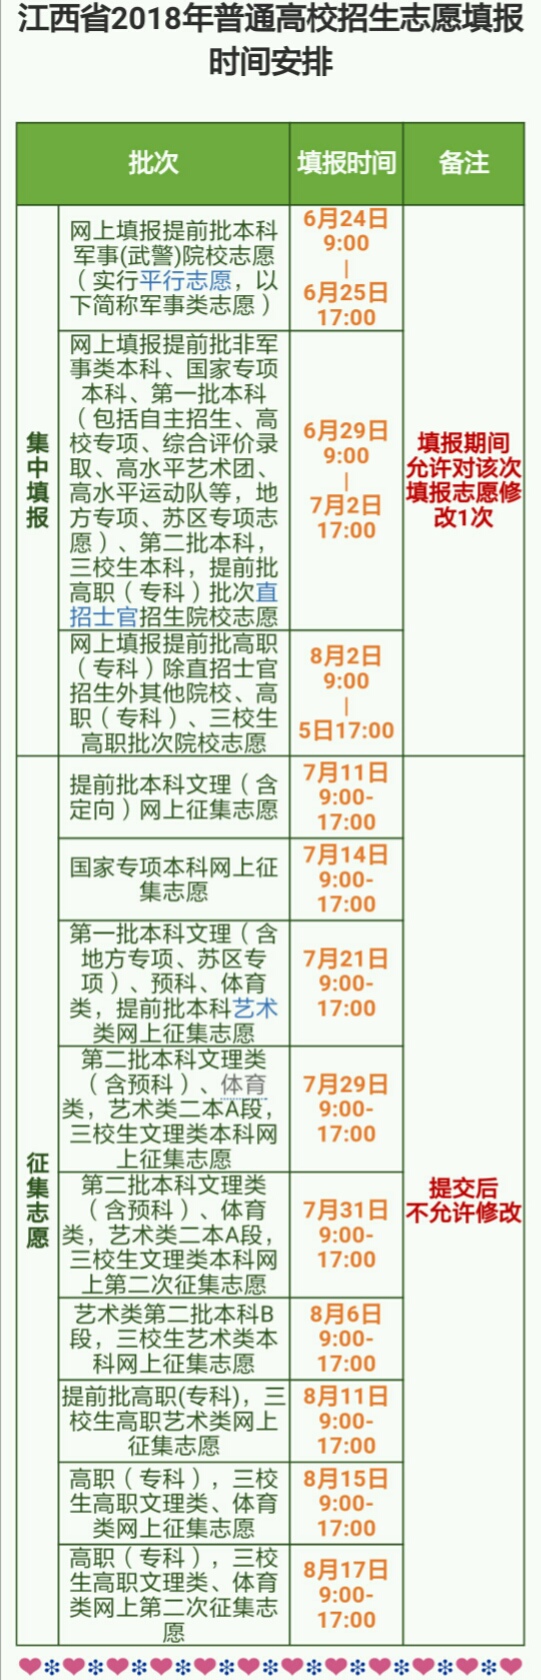 2018年江西高考志愿填报时间安排